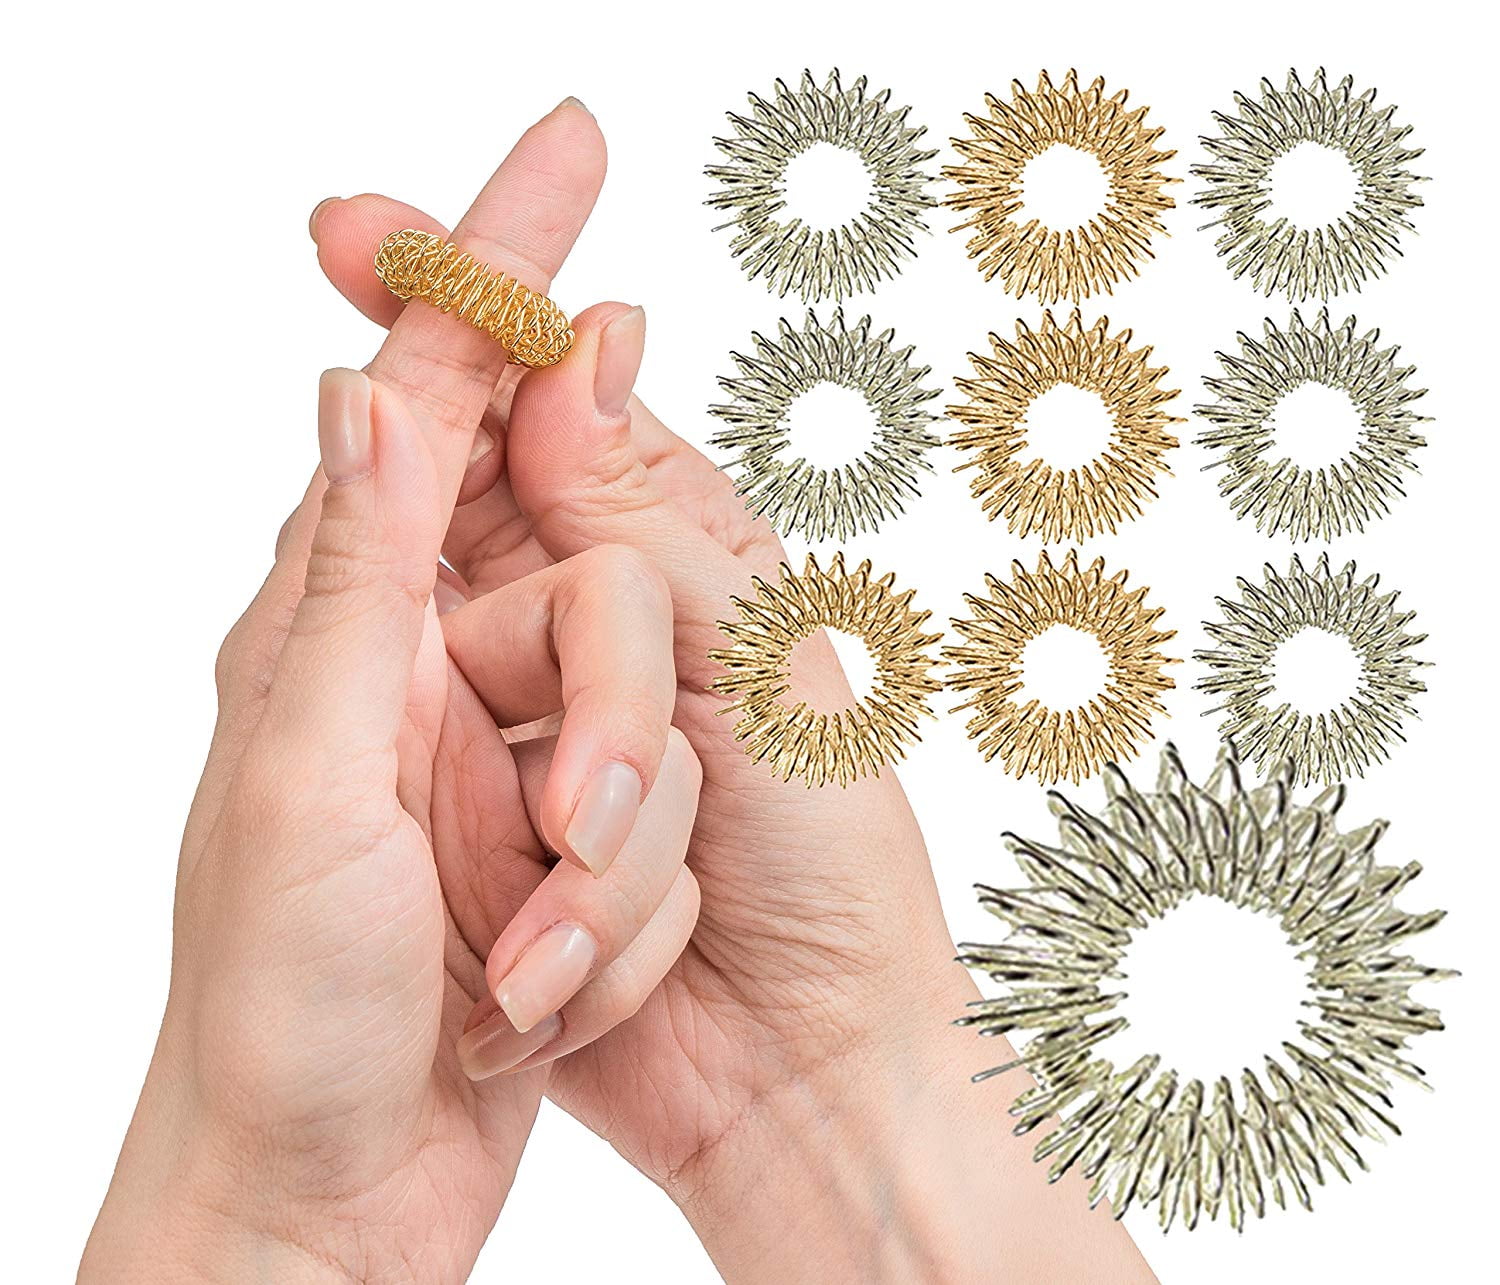 5x Finger Massage Rings Spiky Sensory Hand Fingers Acupressure Massager Ring NEW 